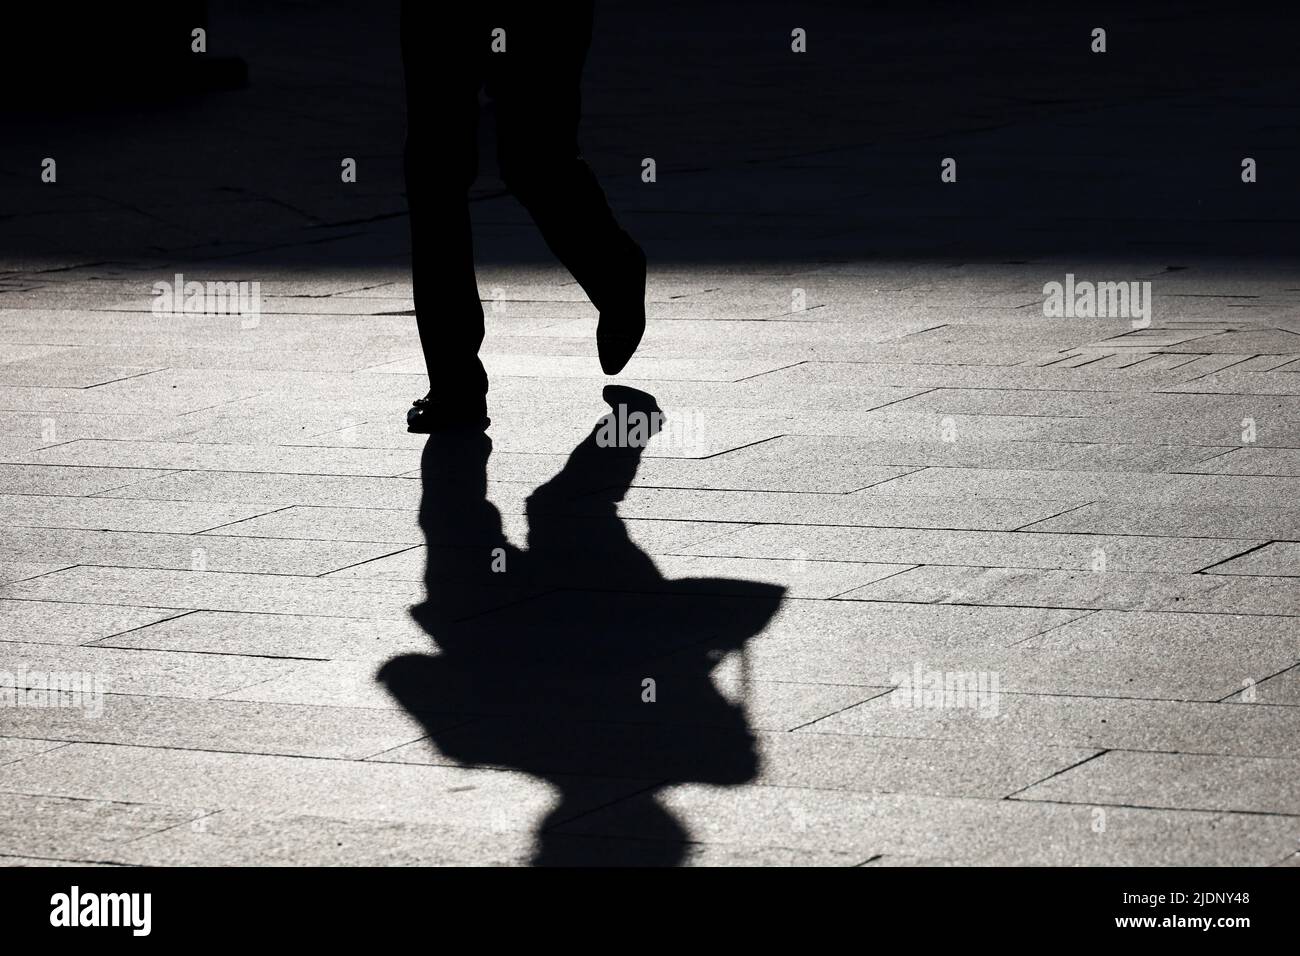 Silhouette di donna solitaria a piedi con borsa lungo la strada, ombra nera sul marciapiede. Concetto di solitudine, vita cittadina Foto Stock